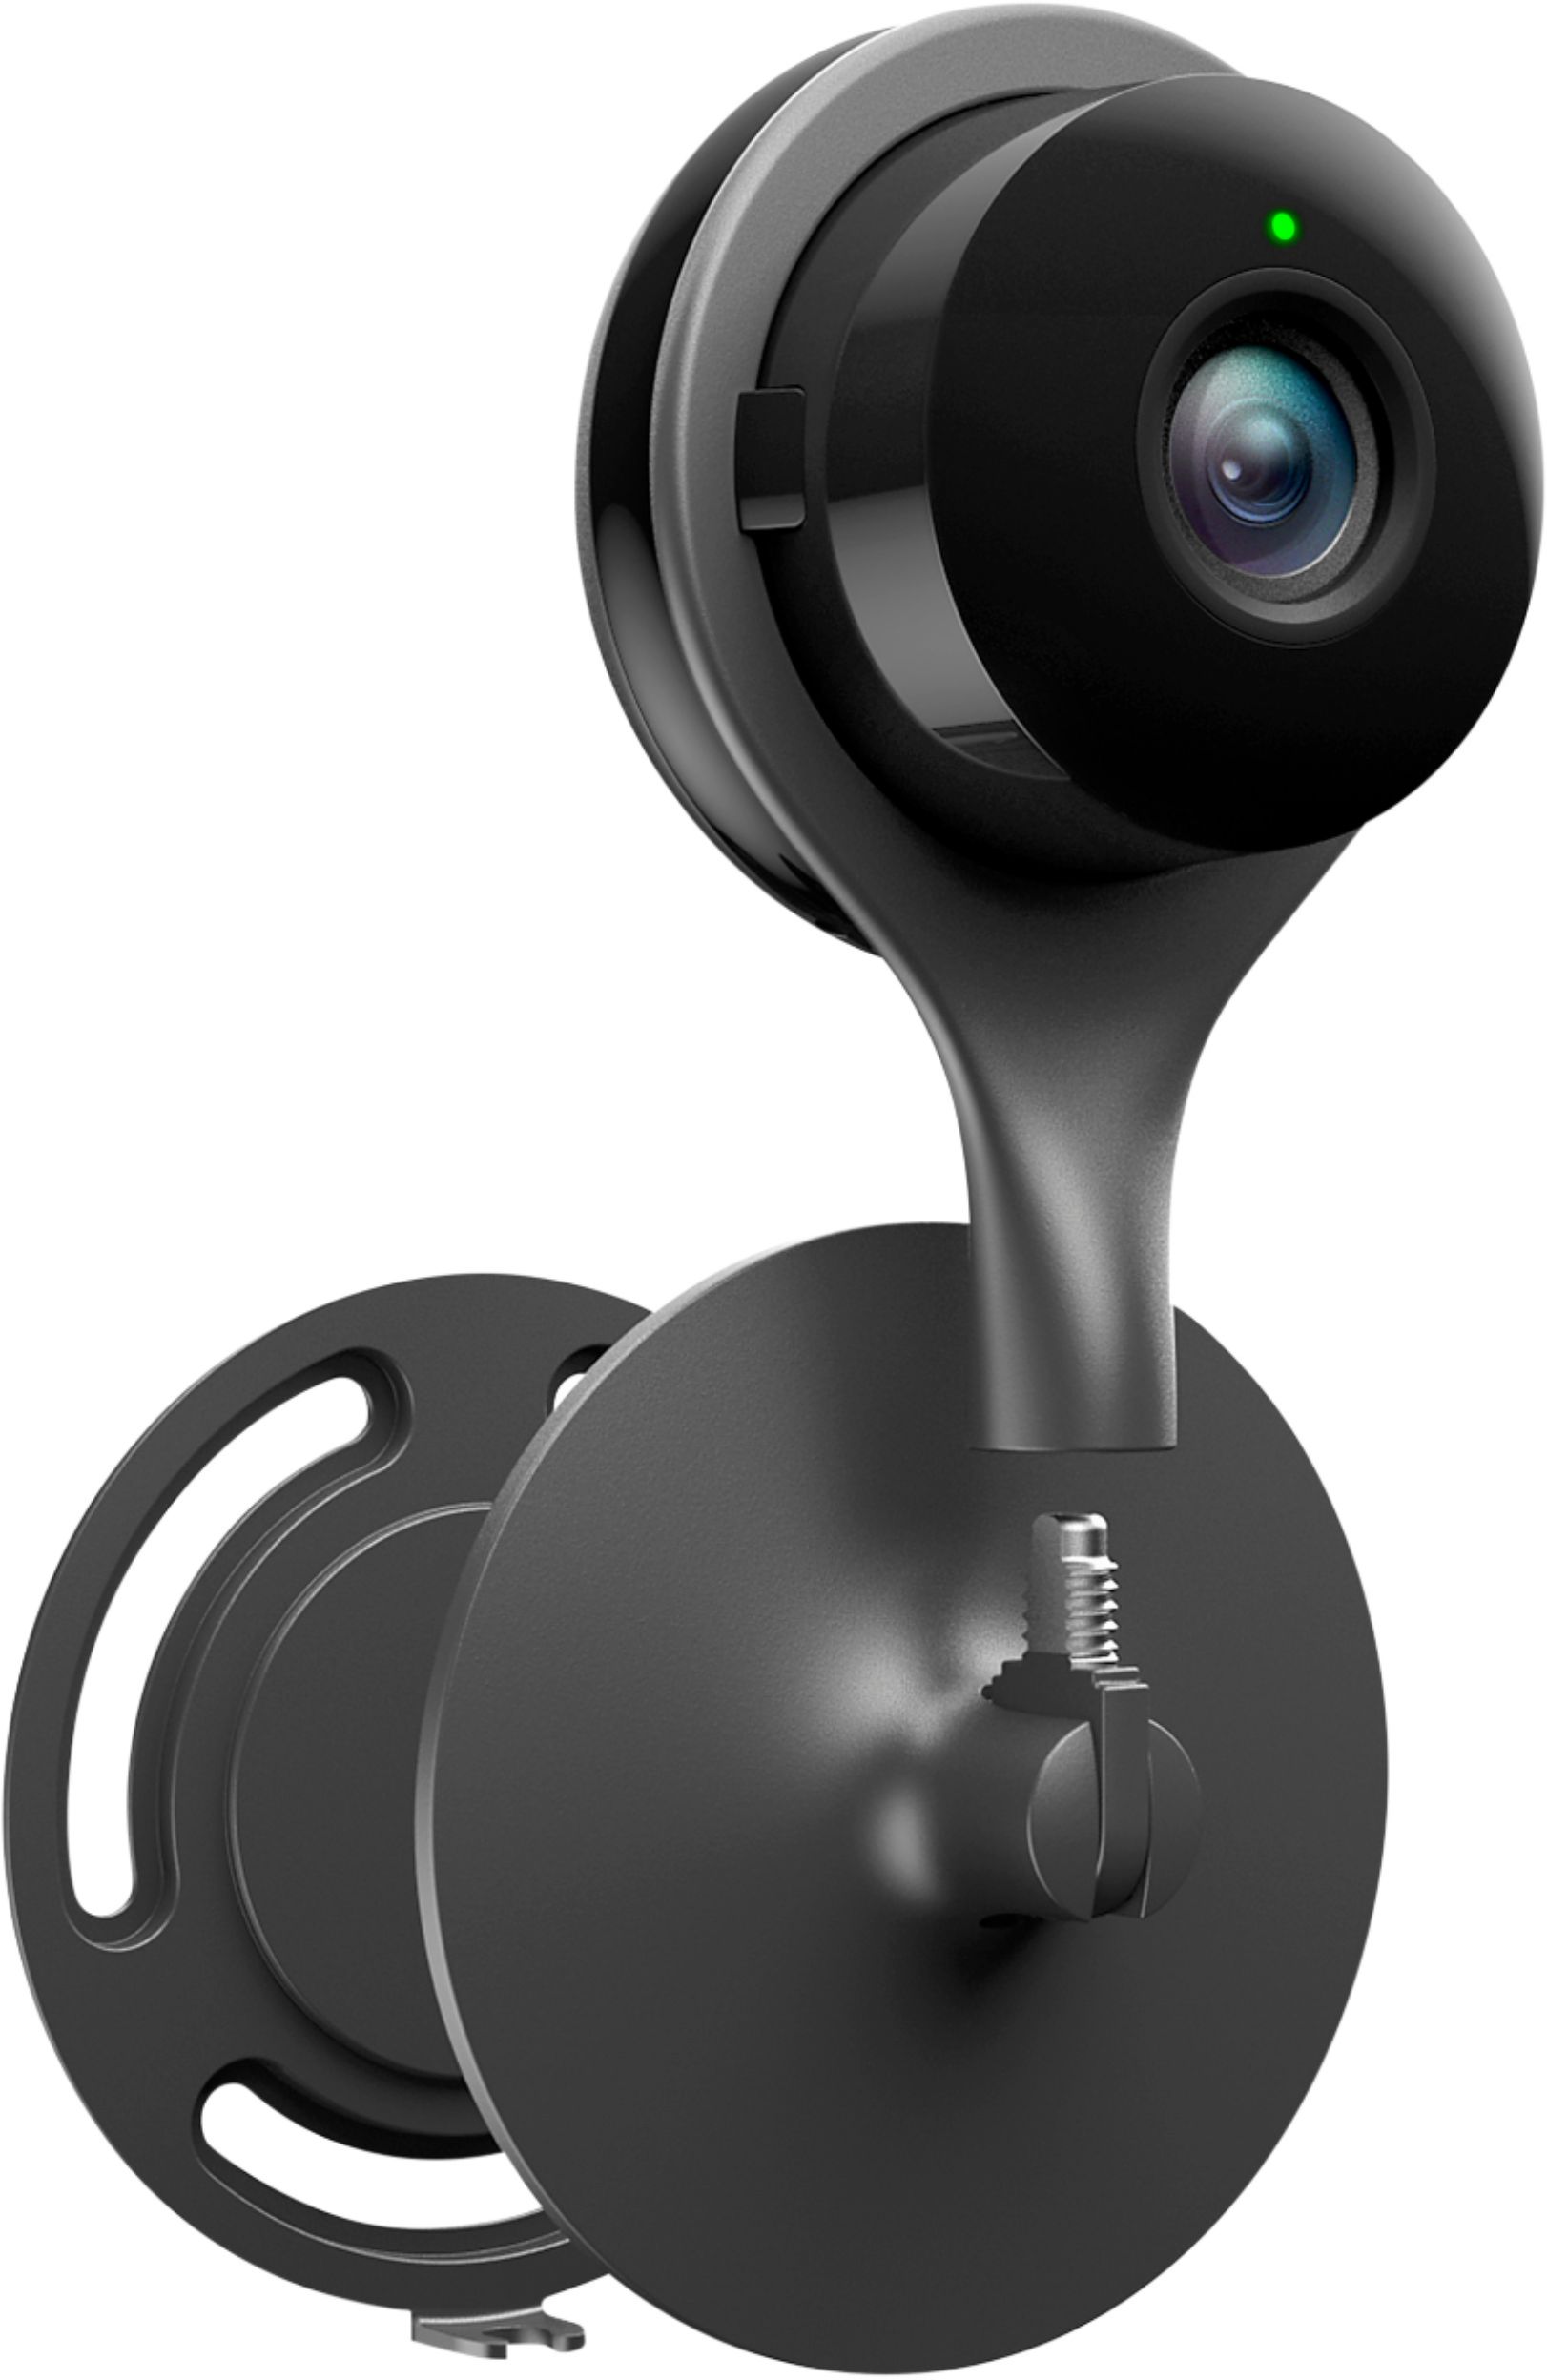 zwaard ketting daar ben ik het mee eens Best Buy: Google Nest Cam Indoor Security Camera Black NC1102ES